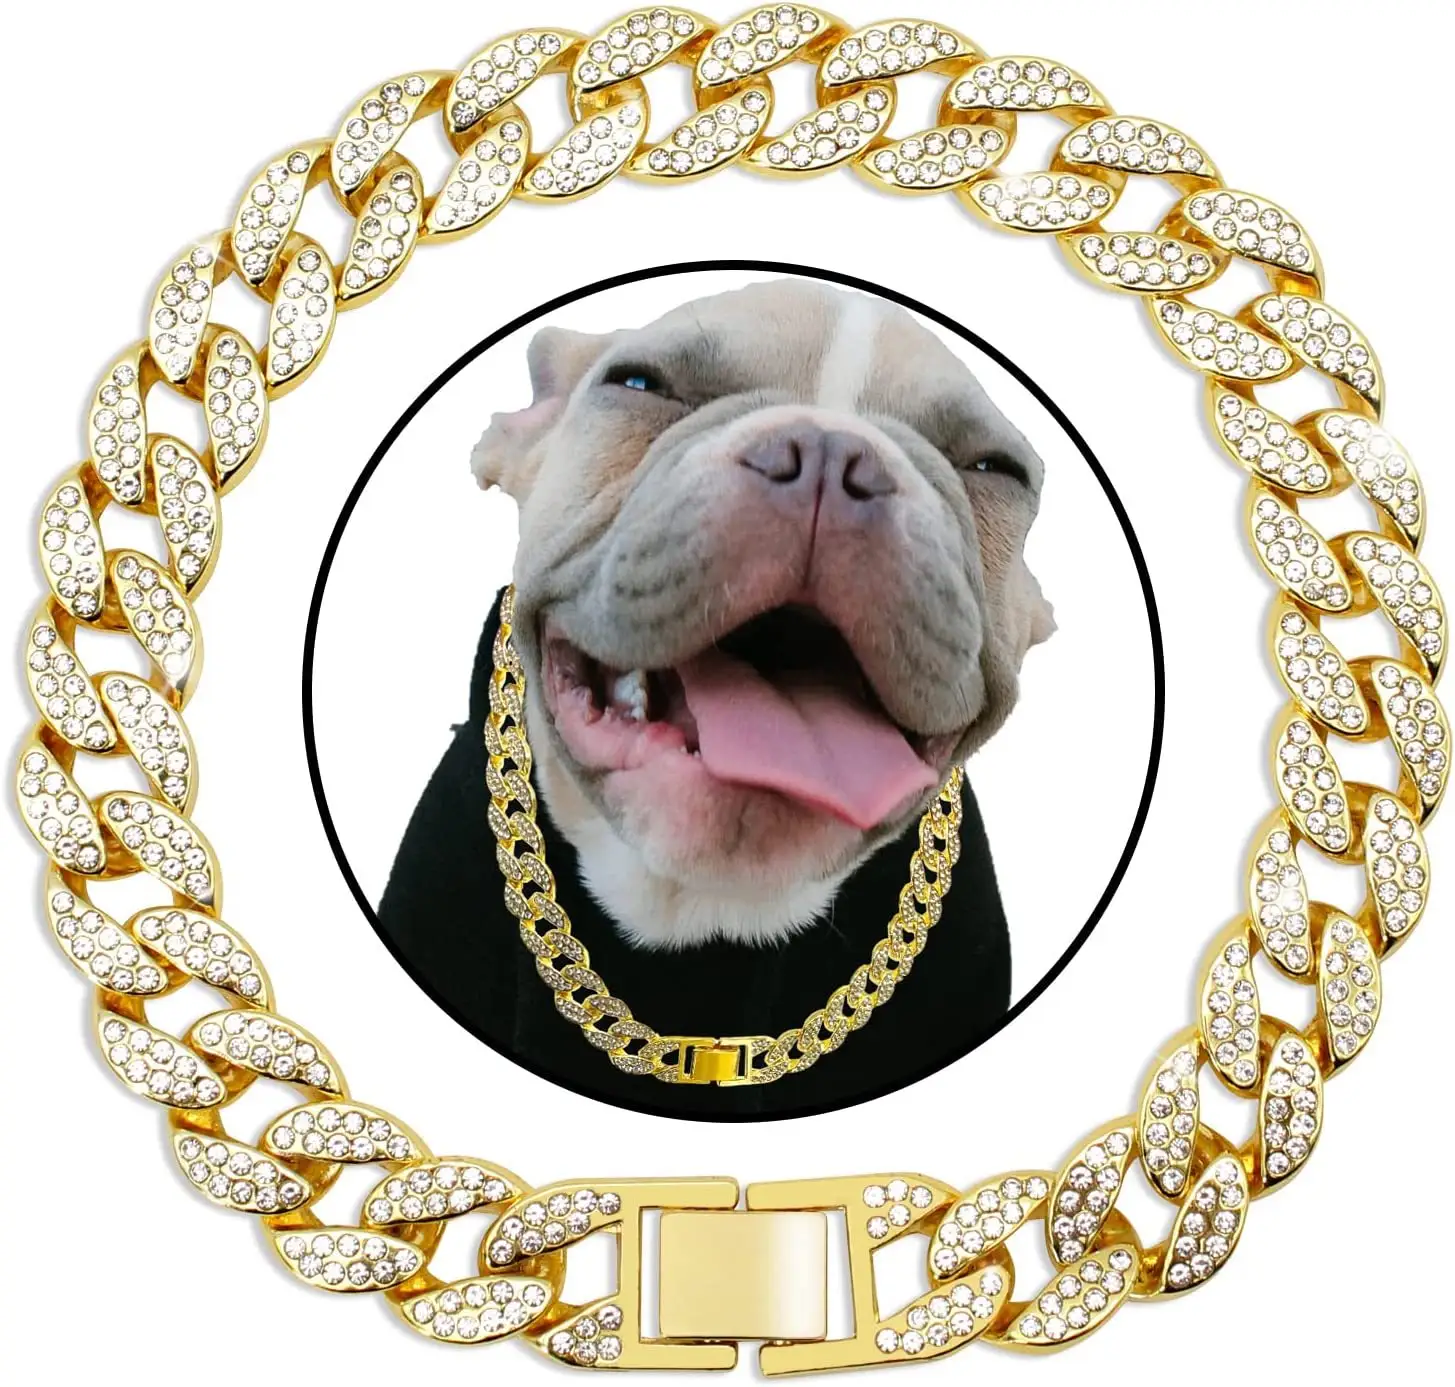 Cadenas doradas para perros grandes, cadena cubana de oro resistente de 15MM de ancho con cerradura de seguridad y collar de perro de lujo con diamantes personalizado